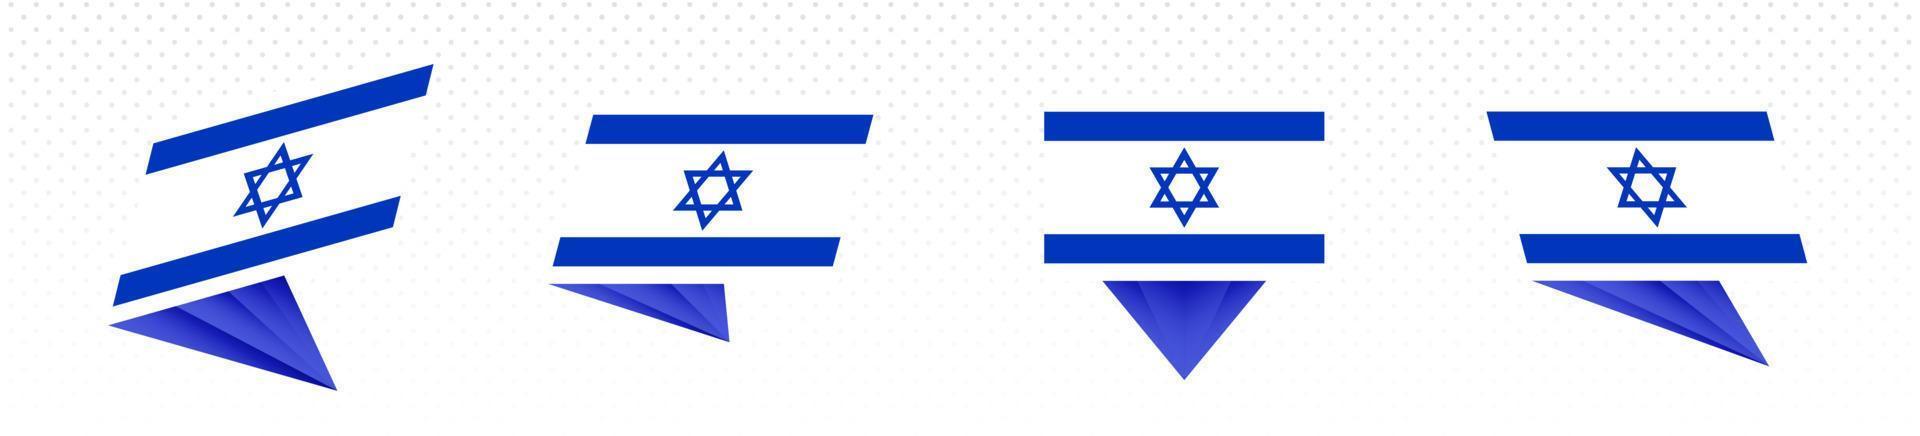 Flagge Israels im modernen abstrakten Design, Flaggensatz. vektor